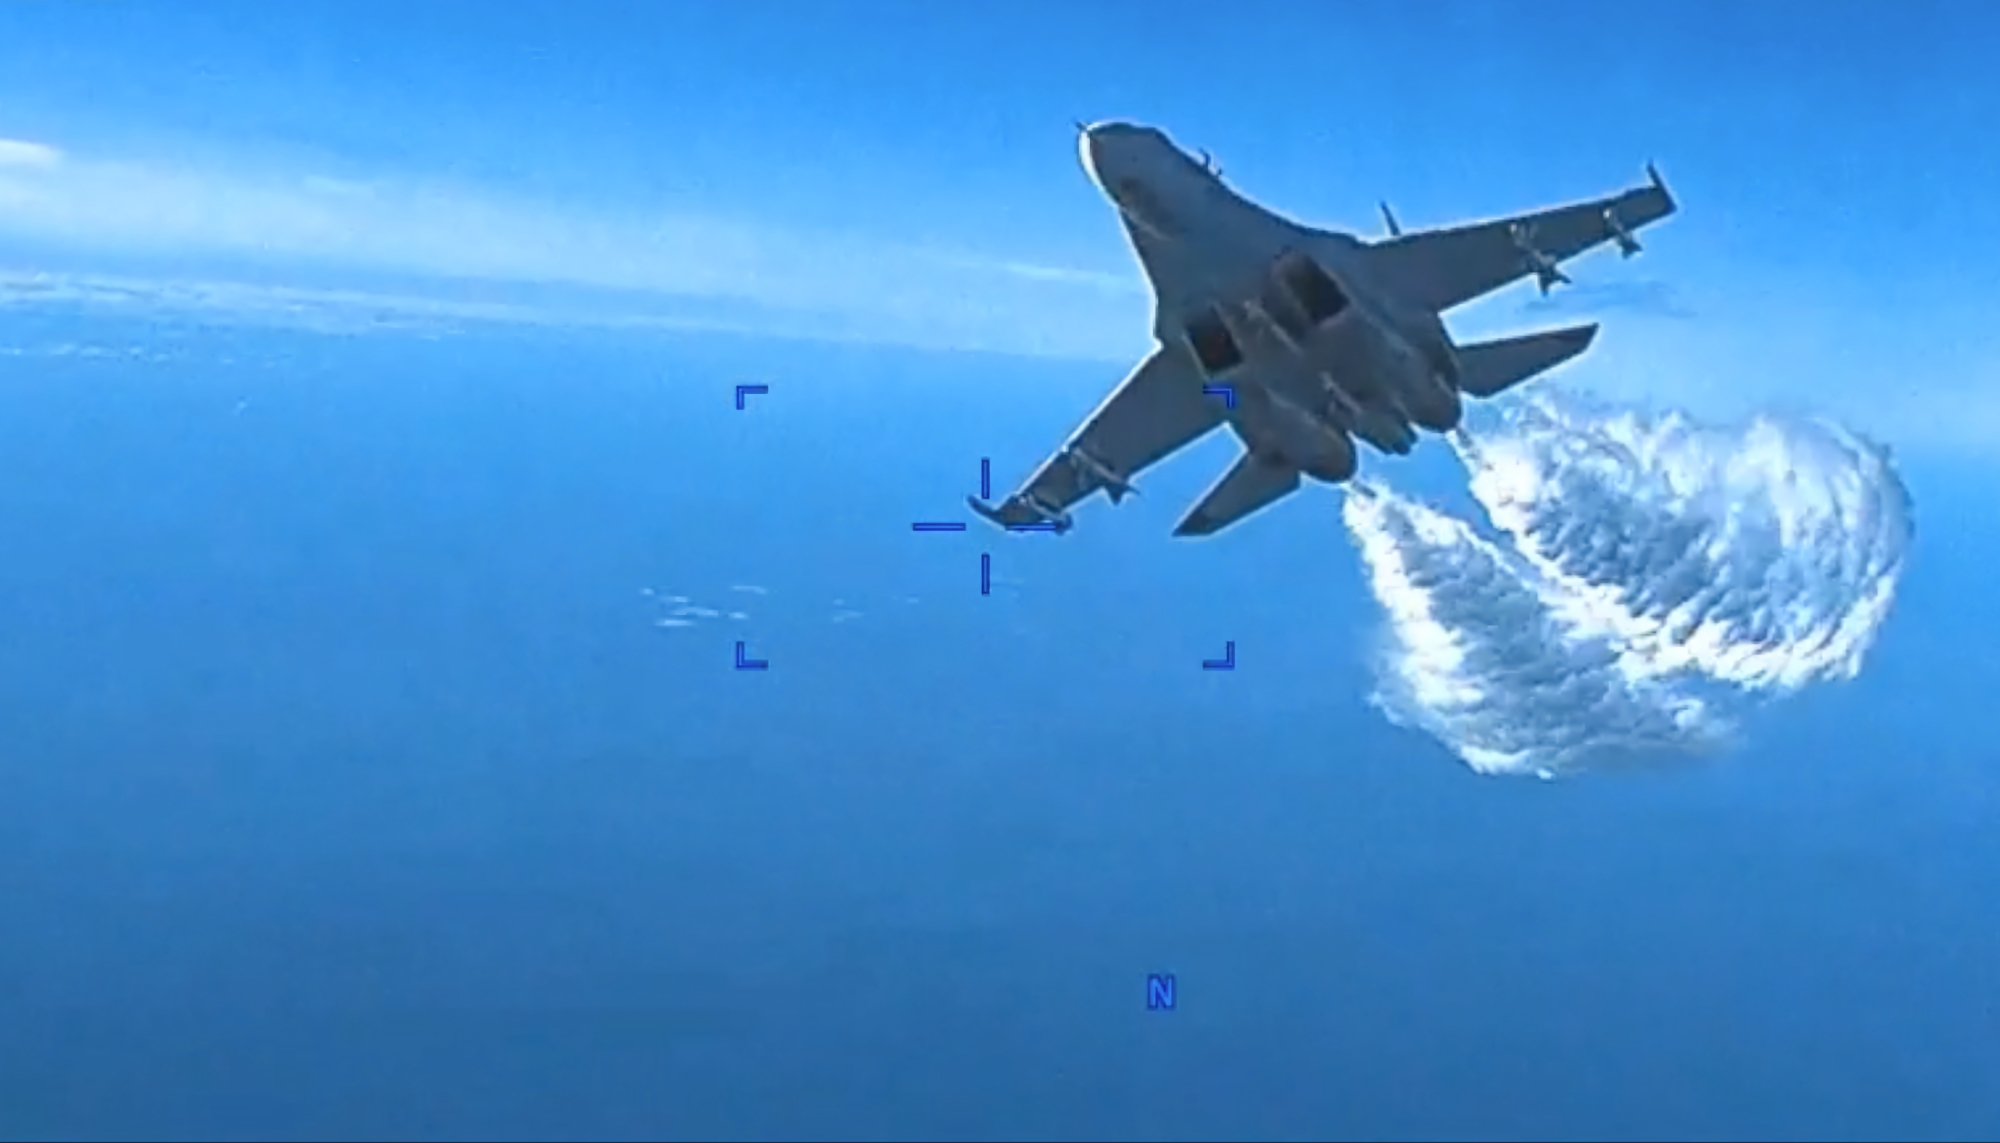 L'armée de l'air américaine a diffusé une vidéo montrant un avion de chasse russe Su-27 entrant en collision avec un drone américain MQ-9 Reaper au-dessus de la mer Noire le 14 mars.